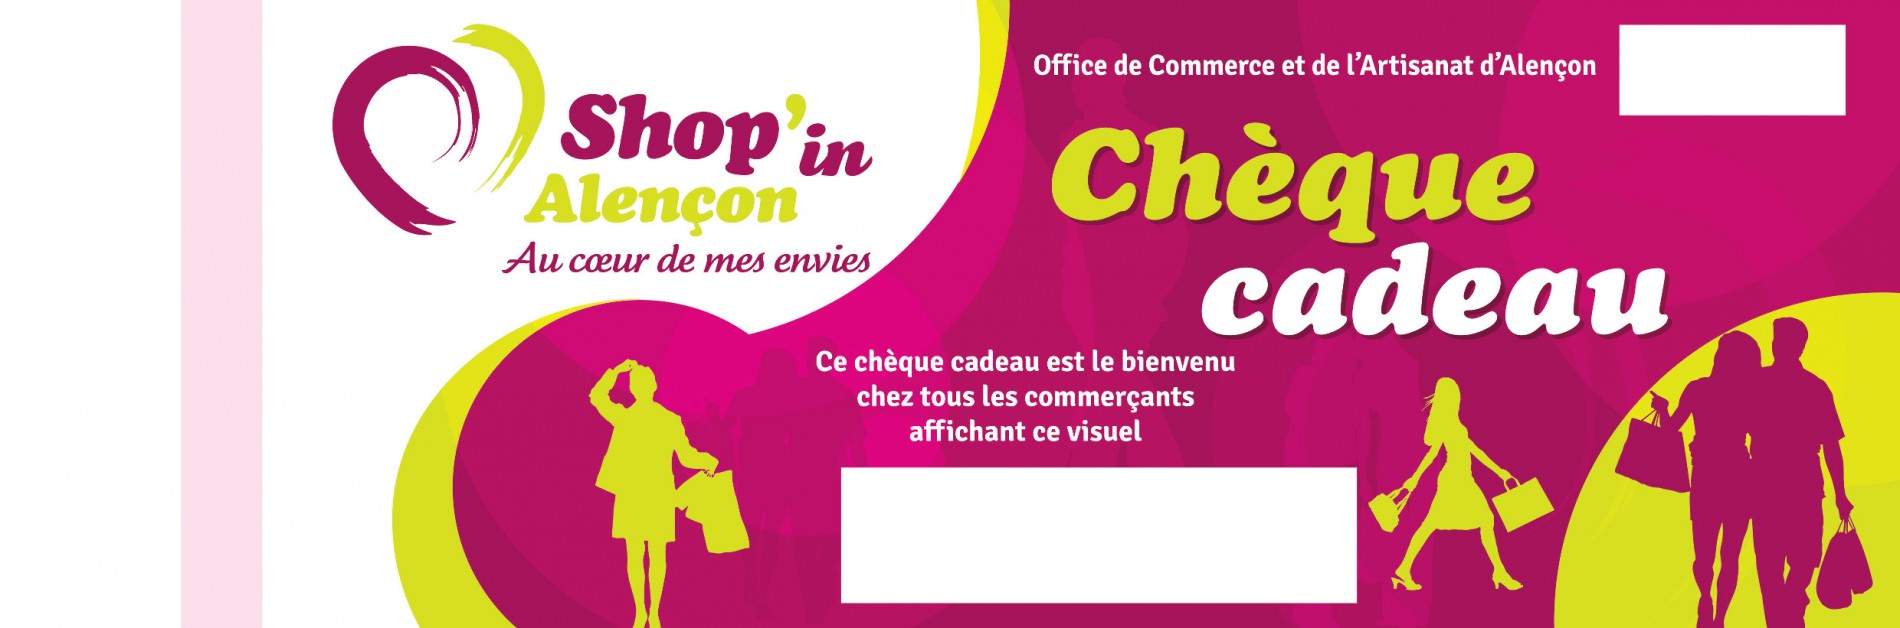 Shop'in Alençon - CHEQUE CADEAU ALENCON 